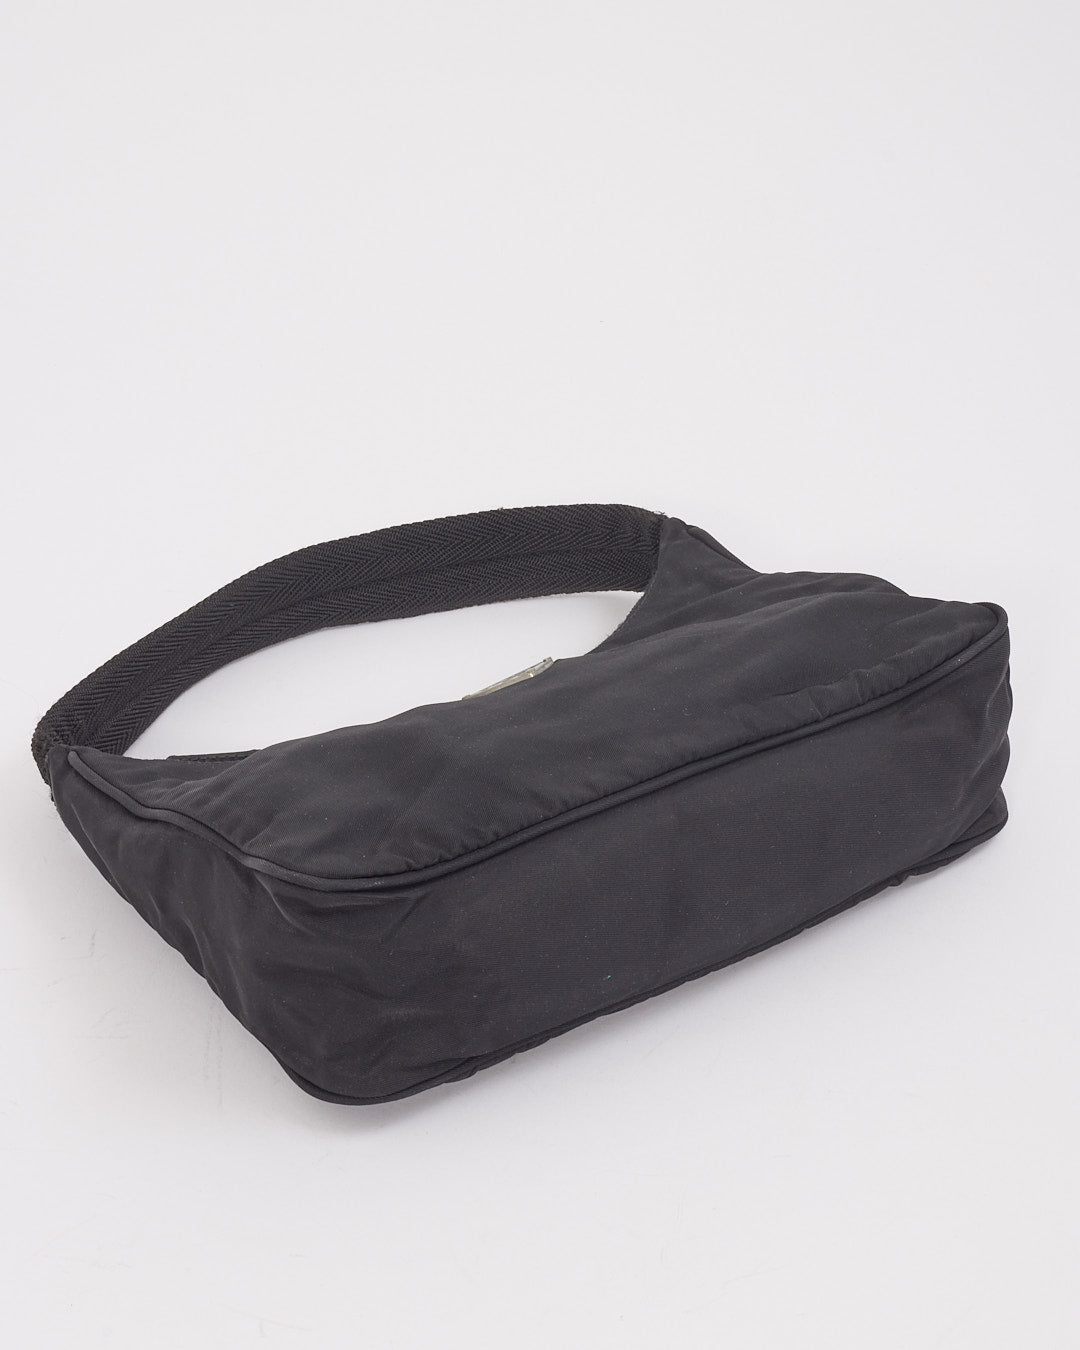 Prada Mini sac à bandoulière Tessuto Hobo en nylon noir